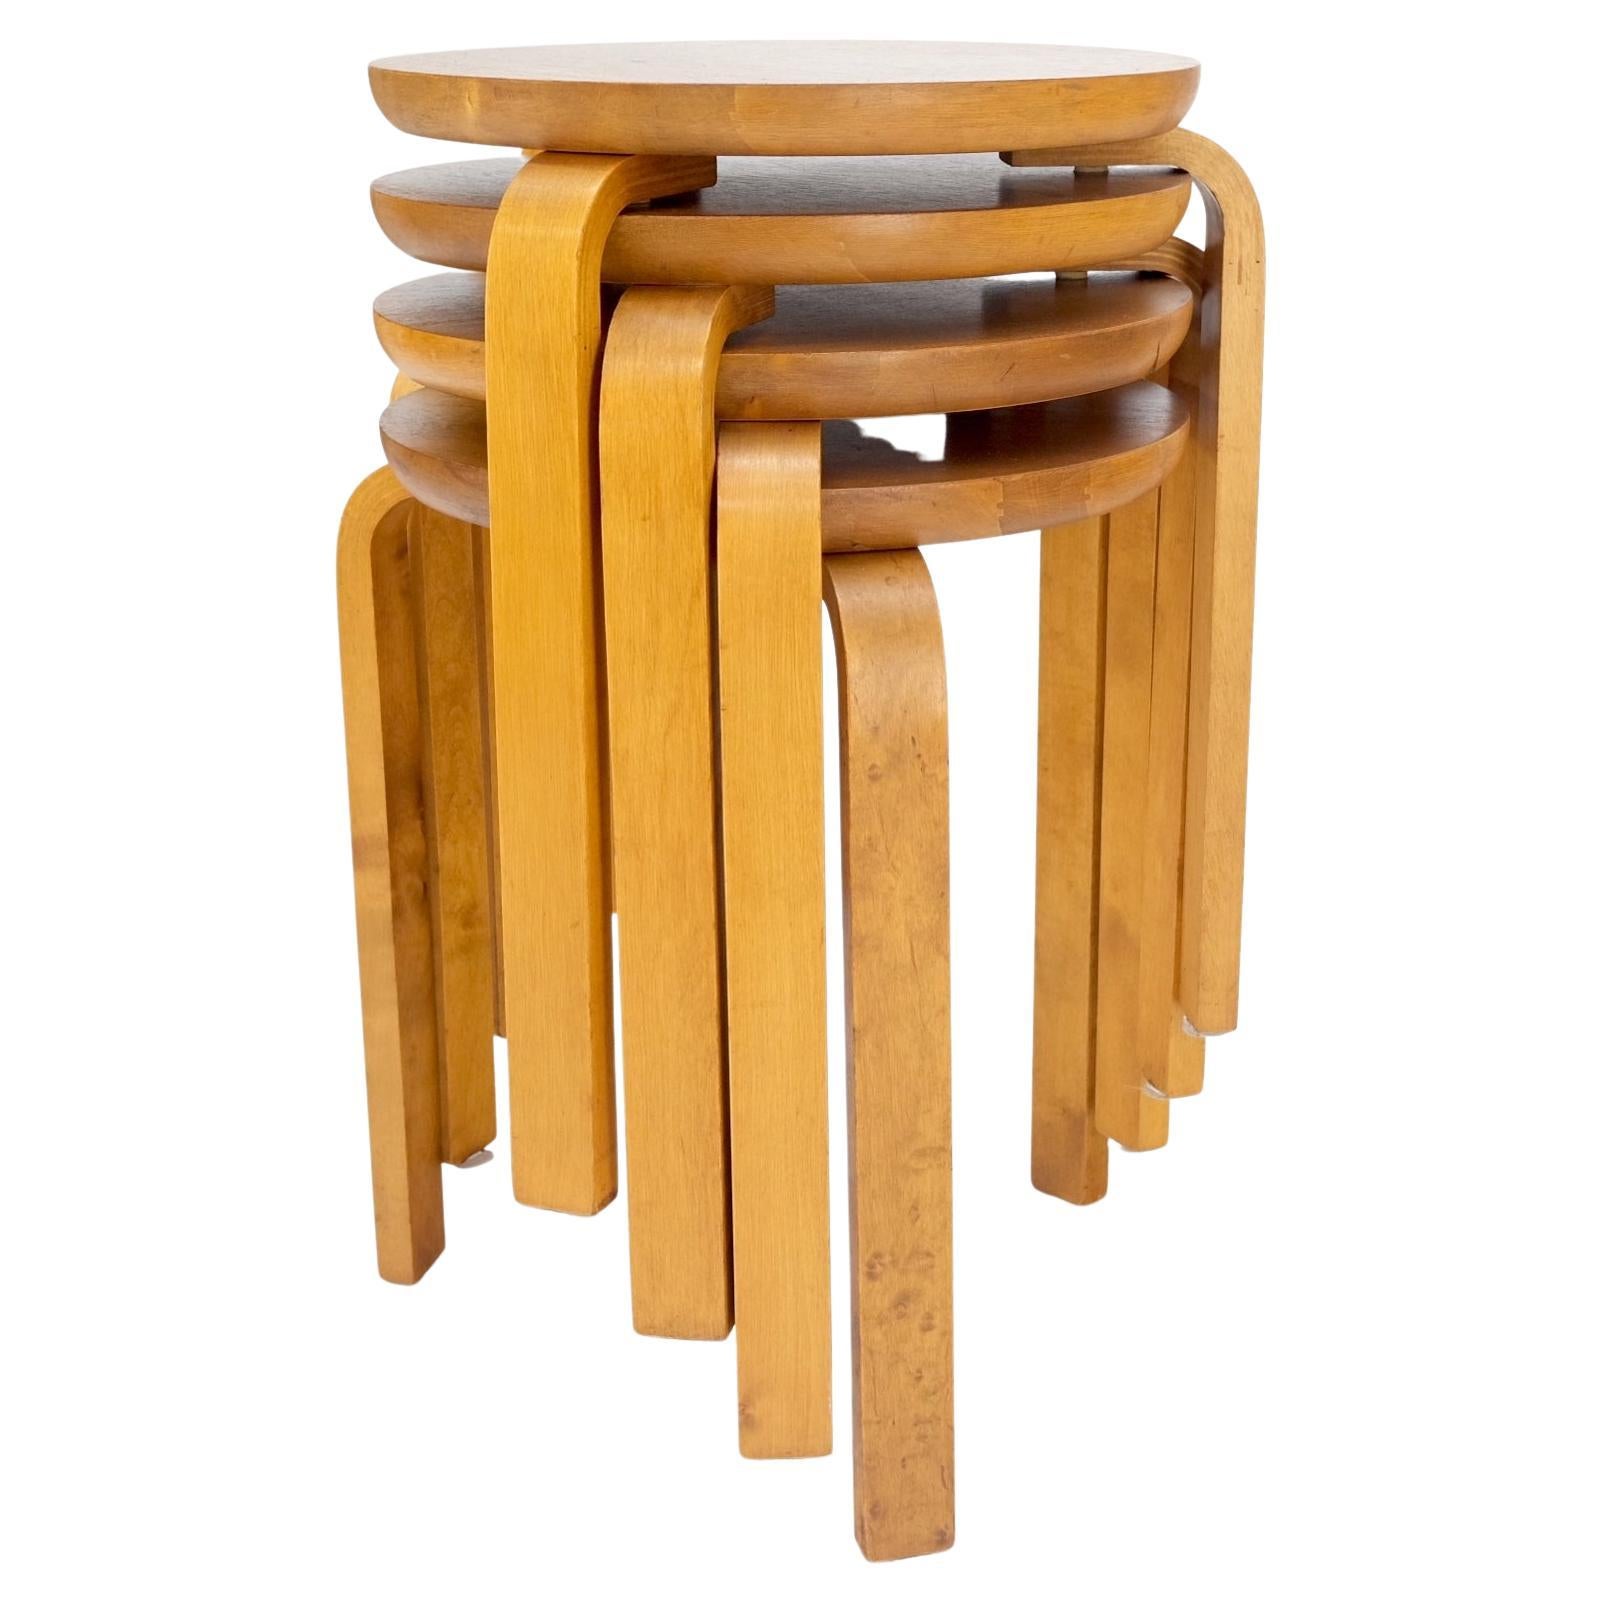 Satz von 4 runden, gebogenen Eichenholz-Nesting-Tischen von Alvar Aalto, hergestellt in Schweden